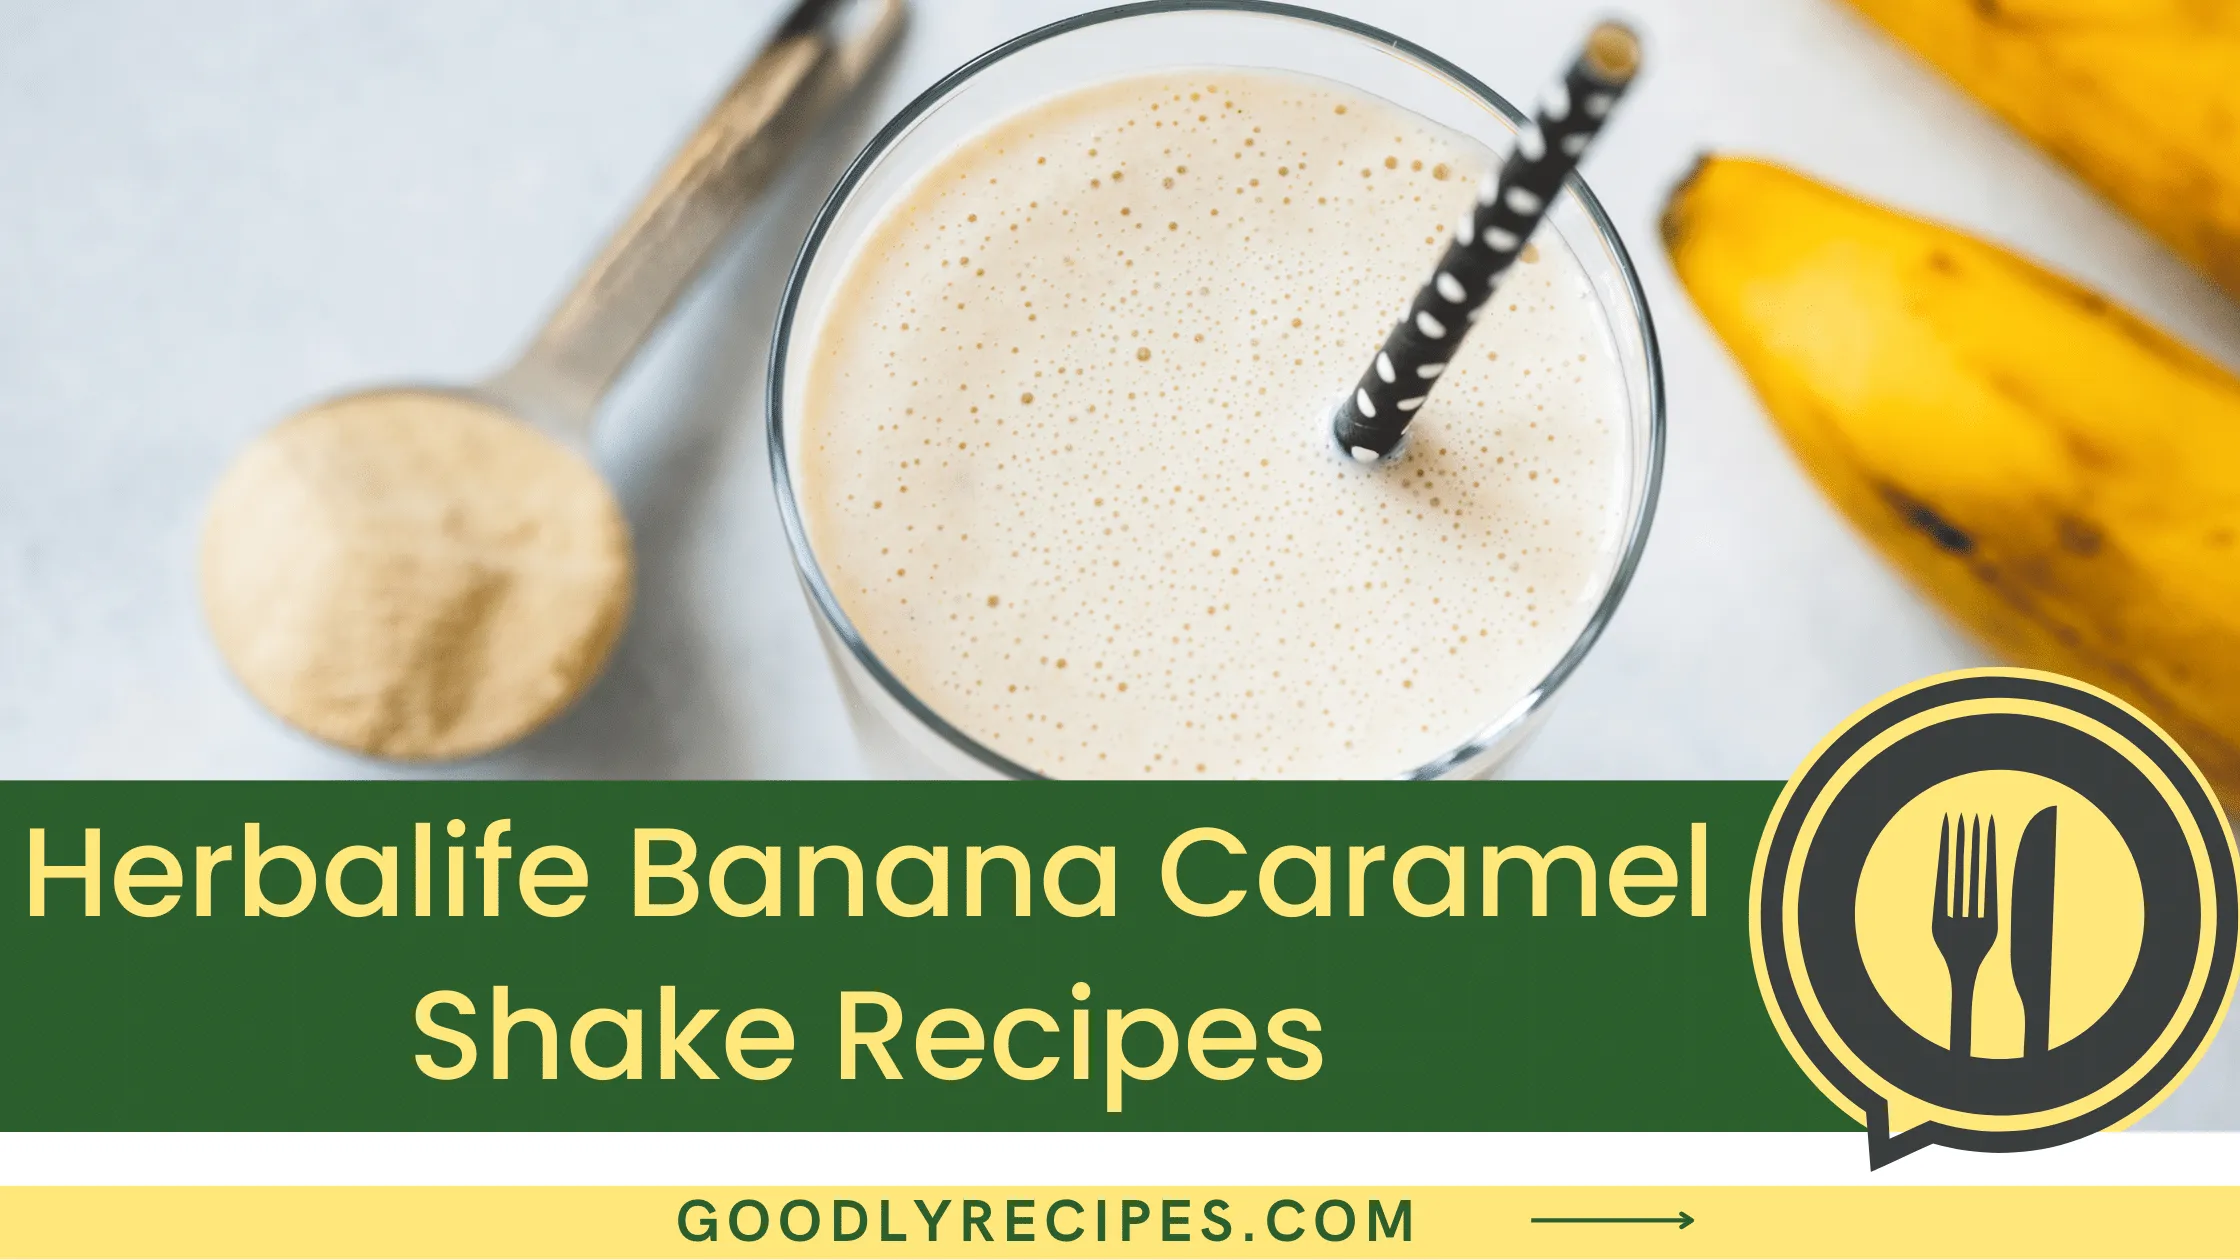 What is Herbalife Banana Caramel Shake?